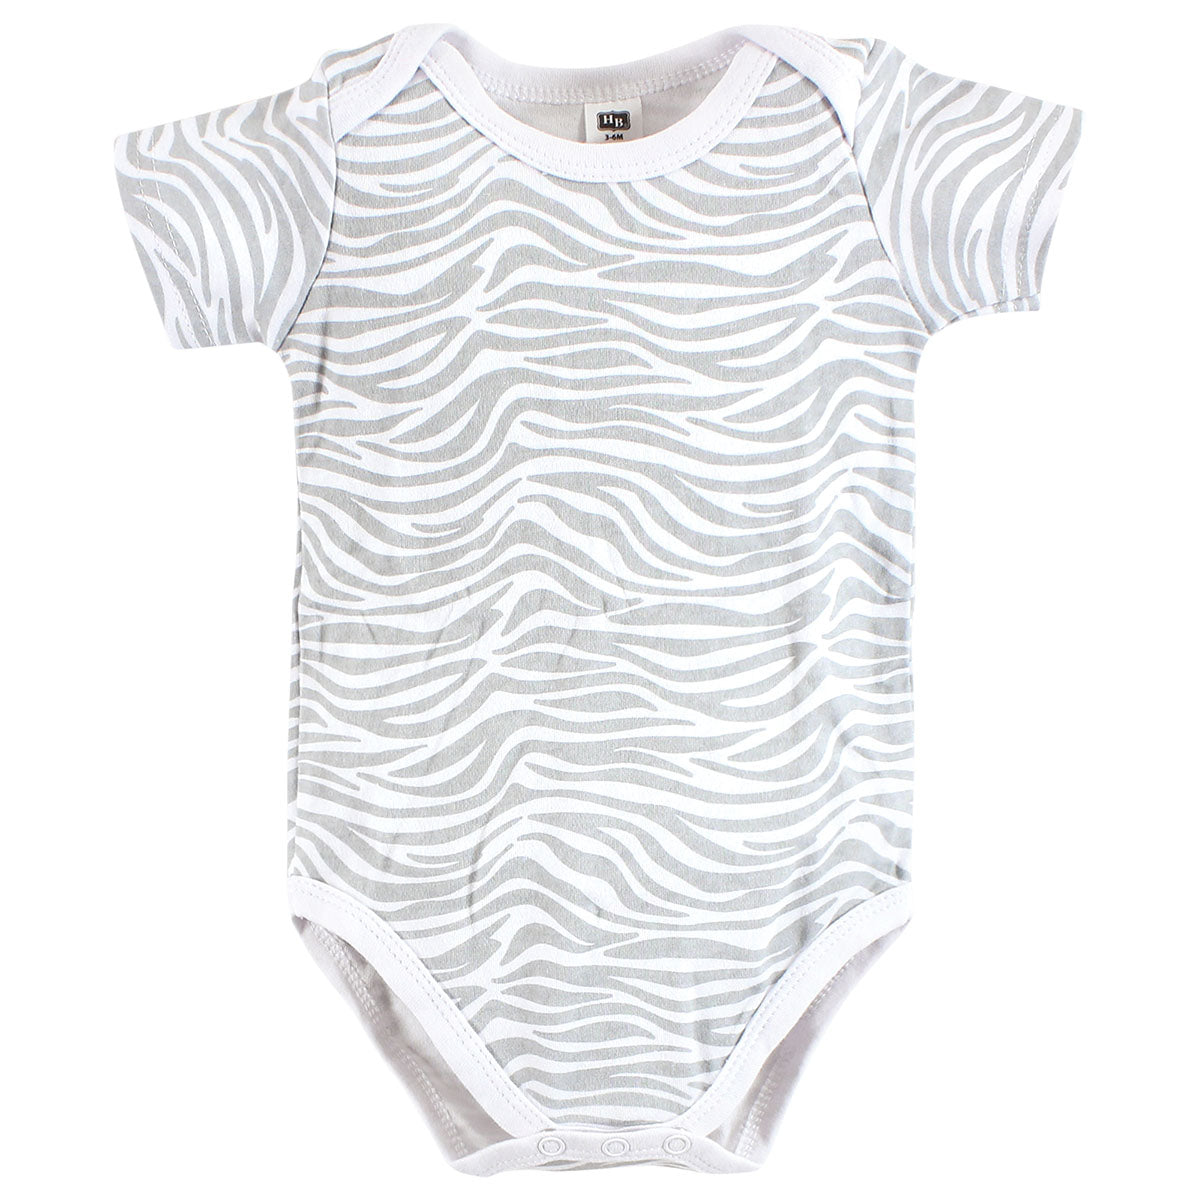 Hudson Baby - Clothing Gift Set 8pc - Safari